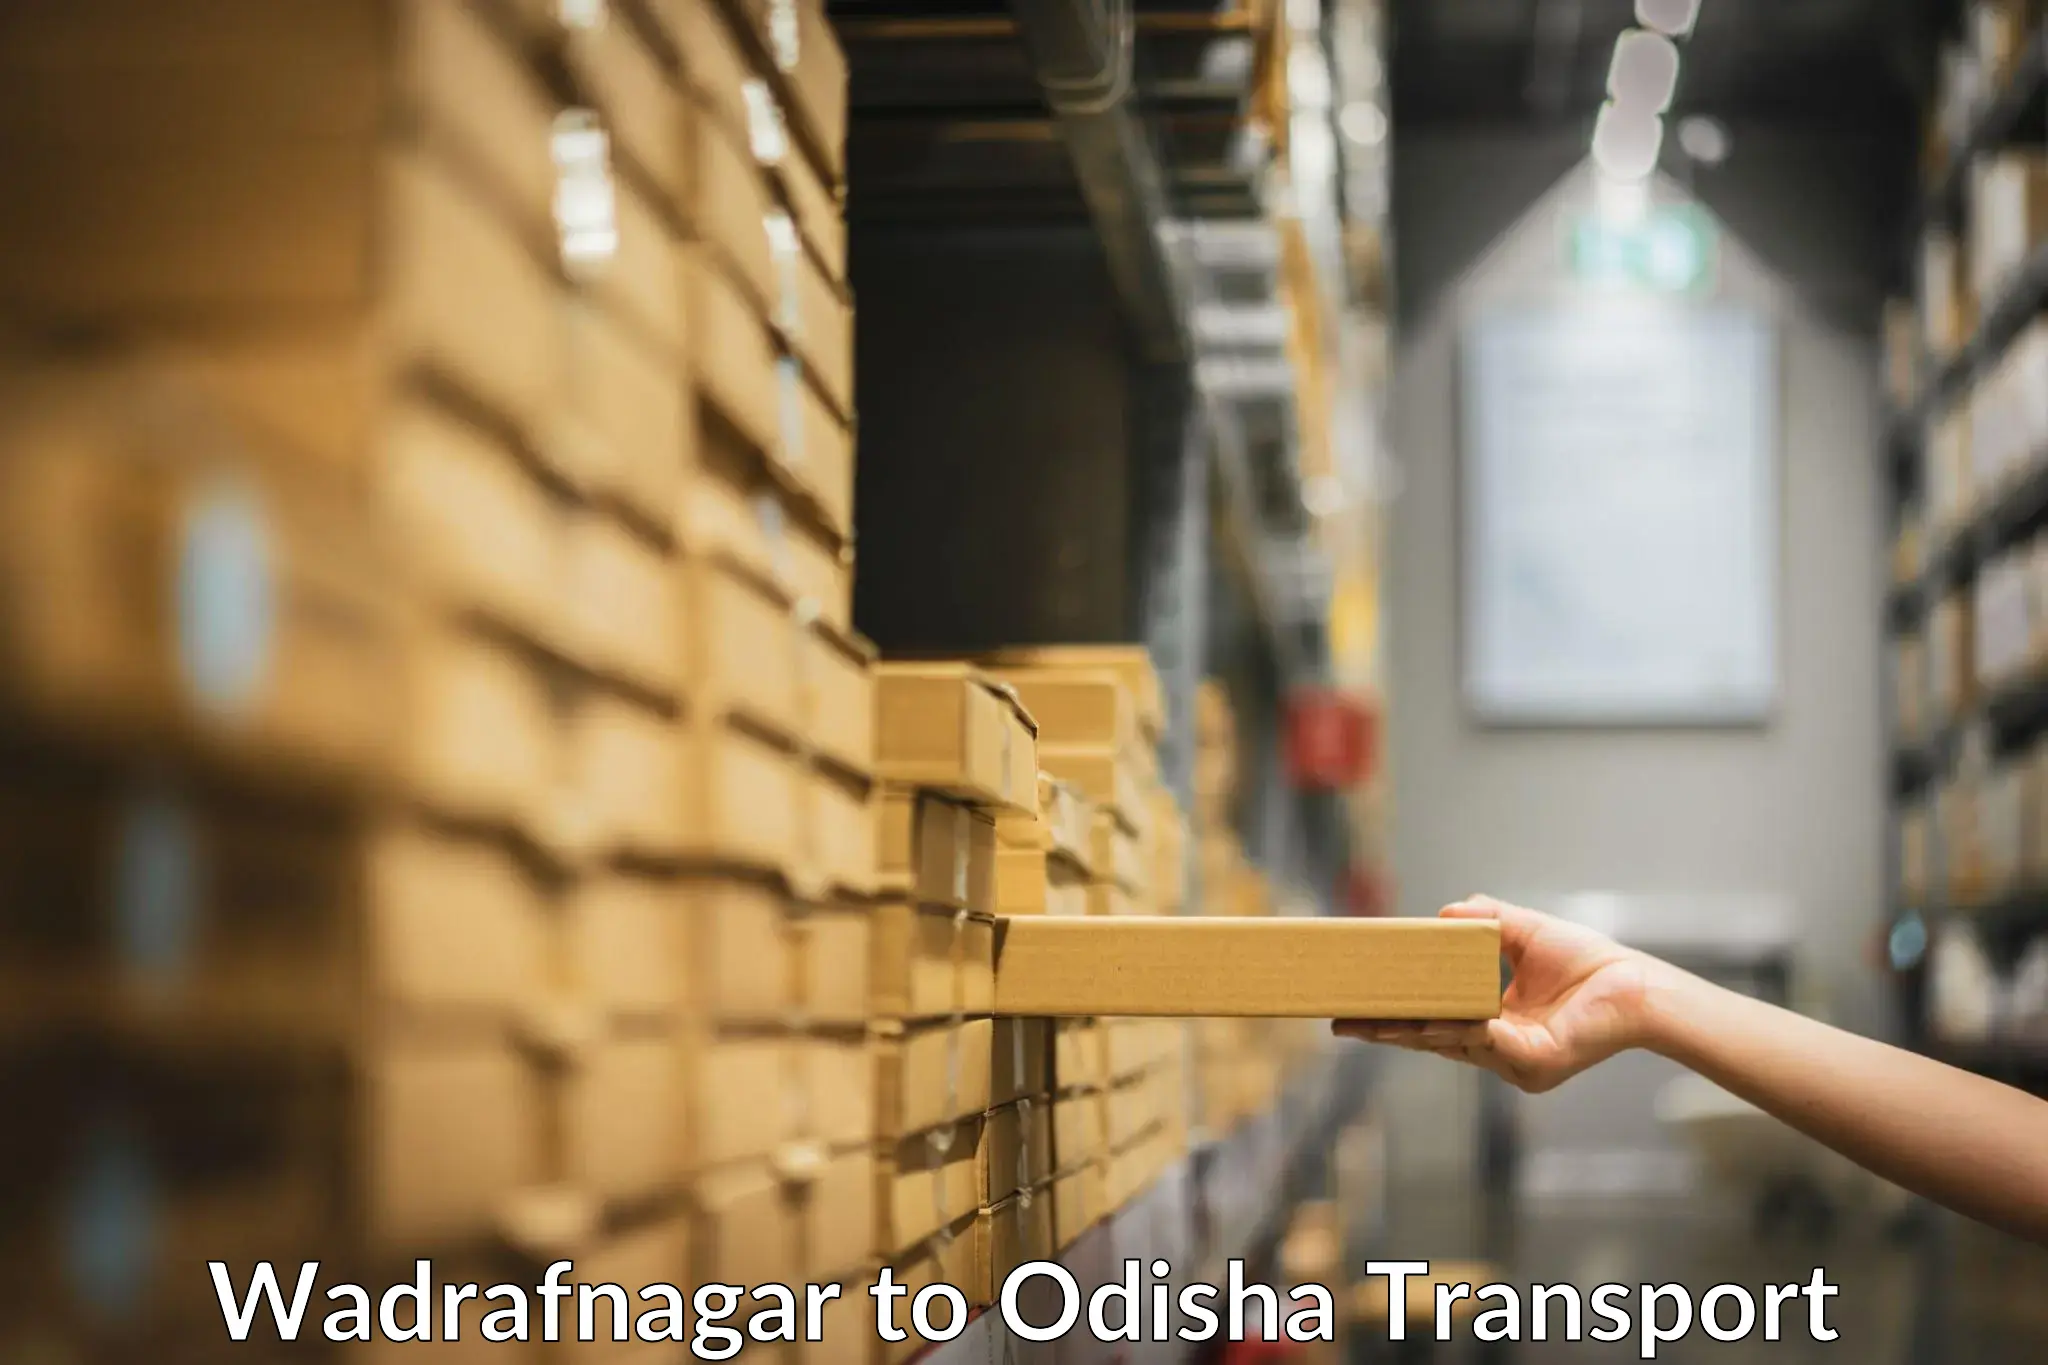 Goods delivery service Wadrafnagar to Dandisahi